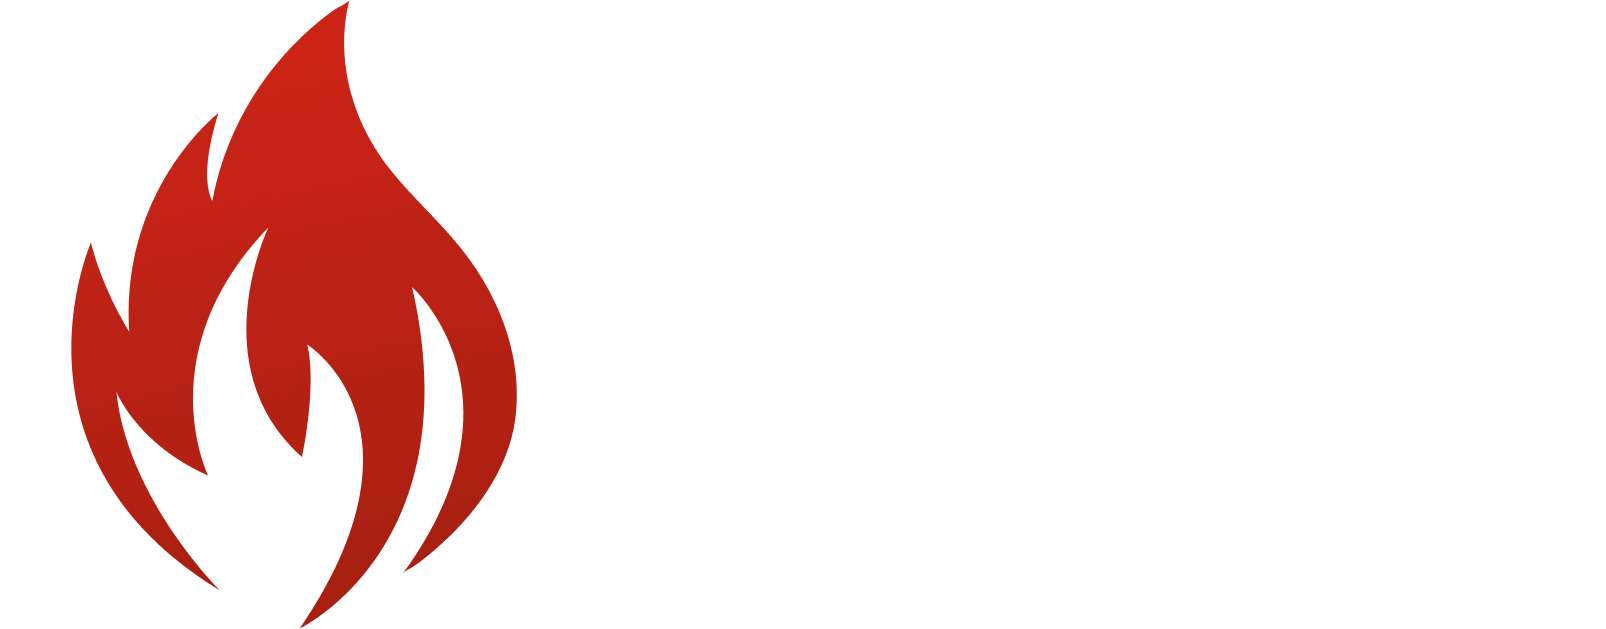 bli-logotype-colorwhite-png